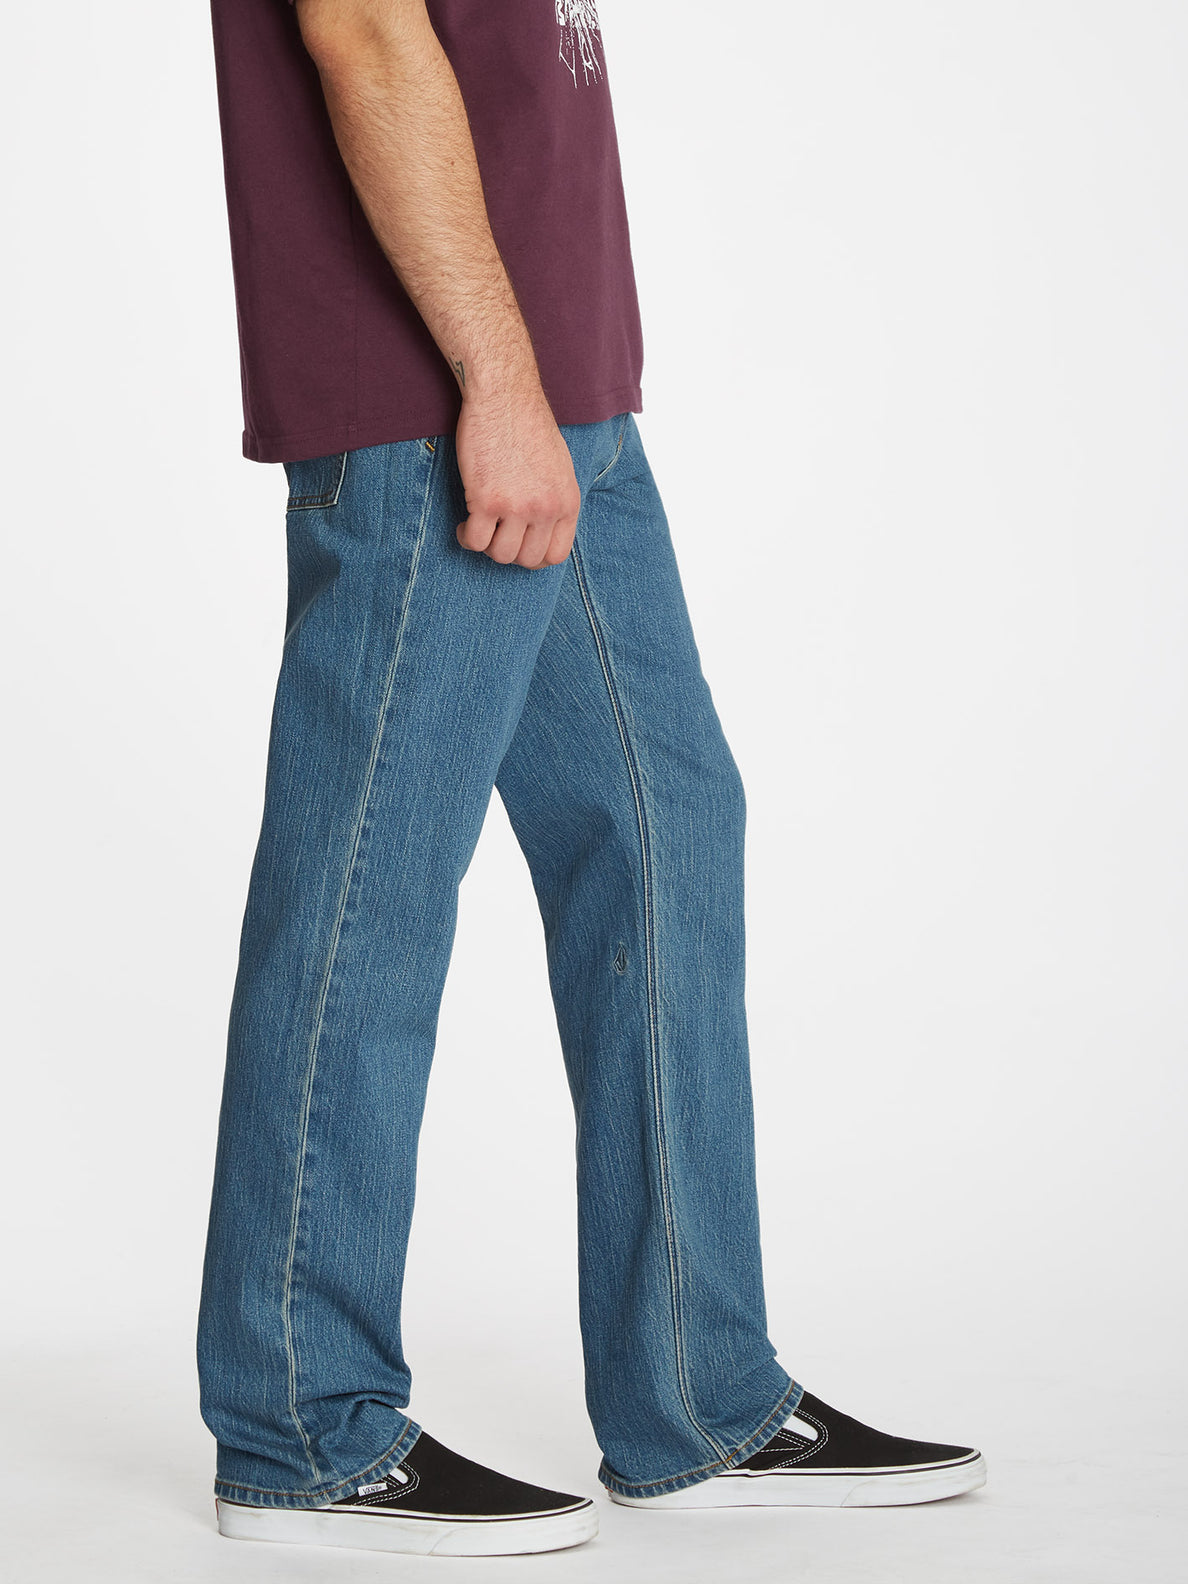 Solver Jeans - AGED INDIGO (A1912303_AIN) [3]